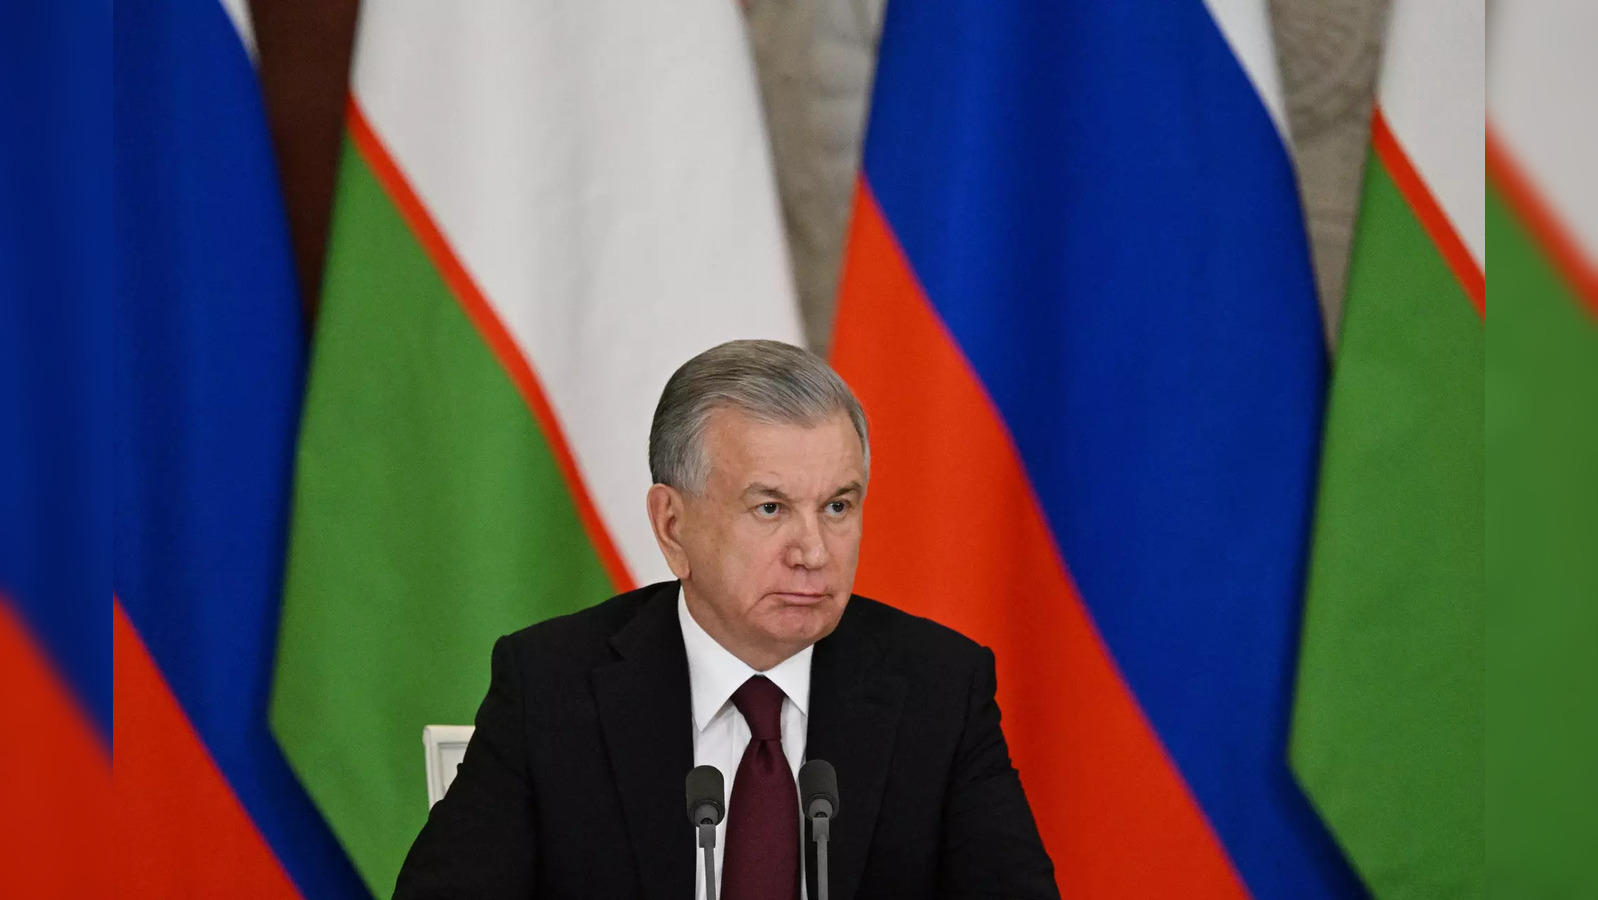 Uzbekistan Jumps To Lead In Open; Four Share Lead In Women's